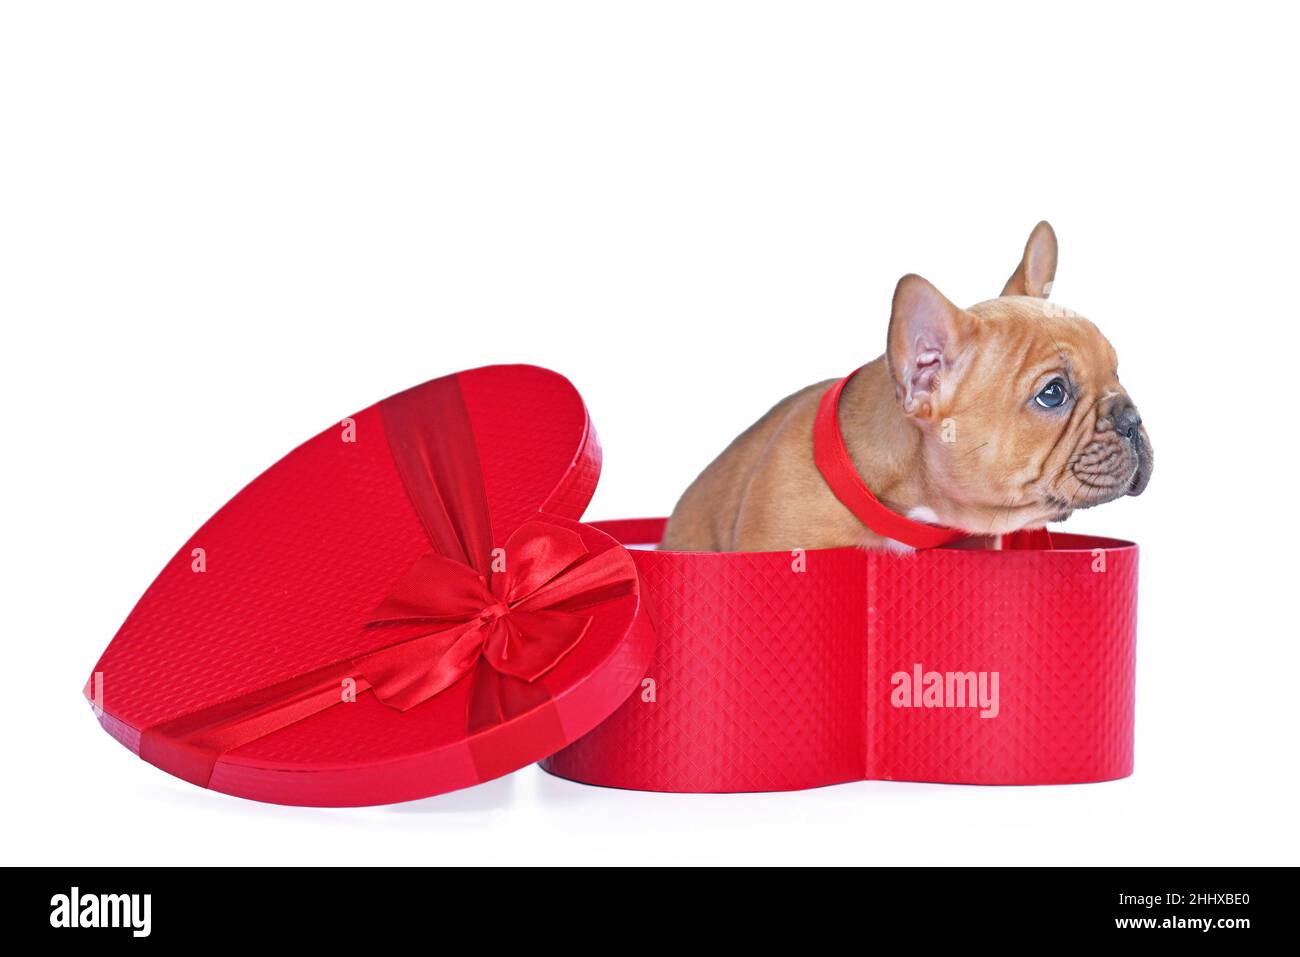 Cachorro de perro bulldog francés desovado rojo en la caja de regalo del día de San Valentín en forma de corazón rojo sobre fondo blanco Foto de stock